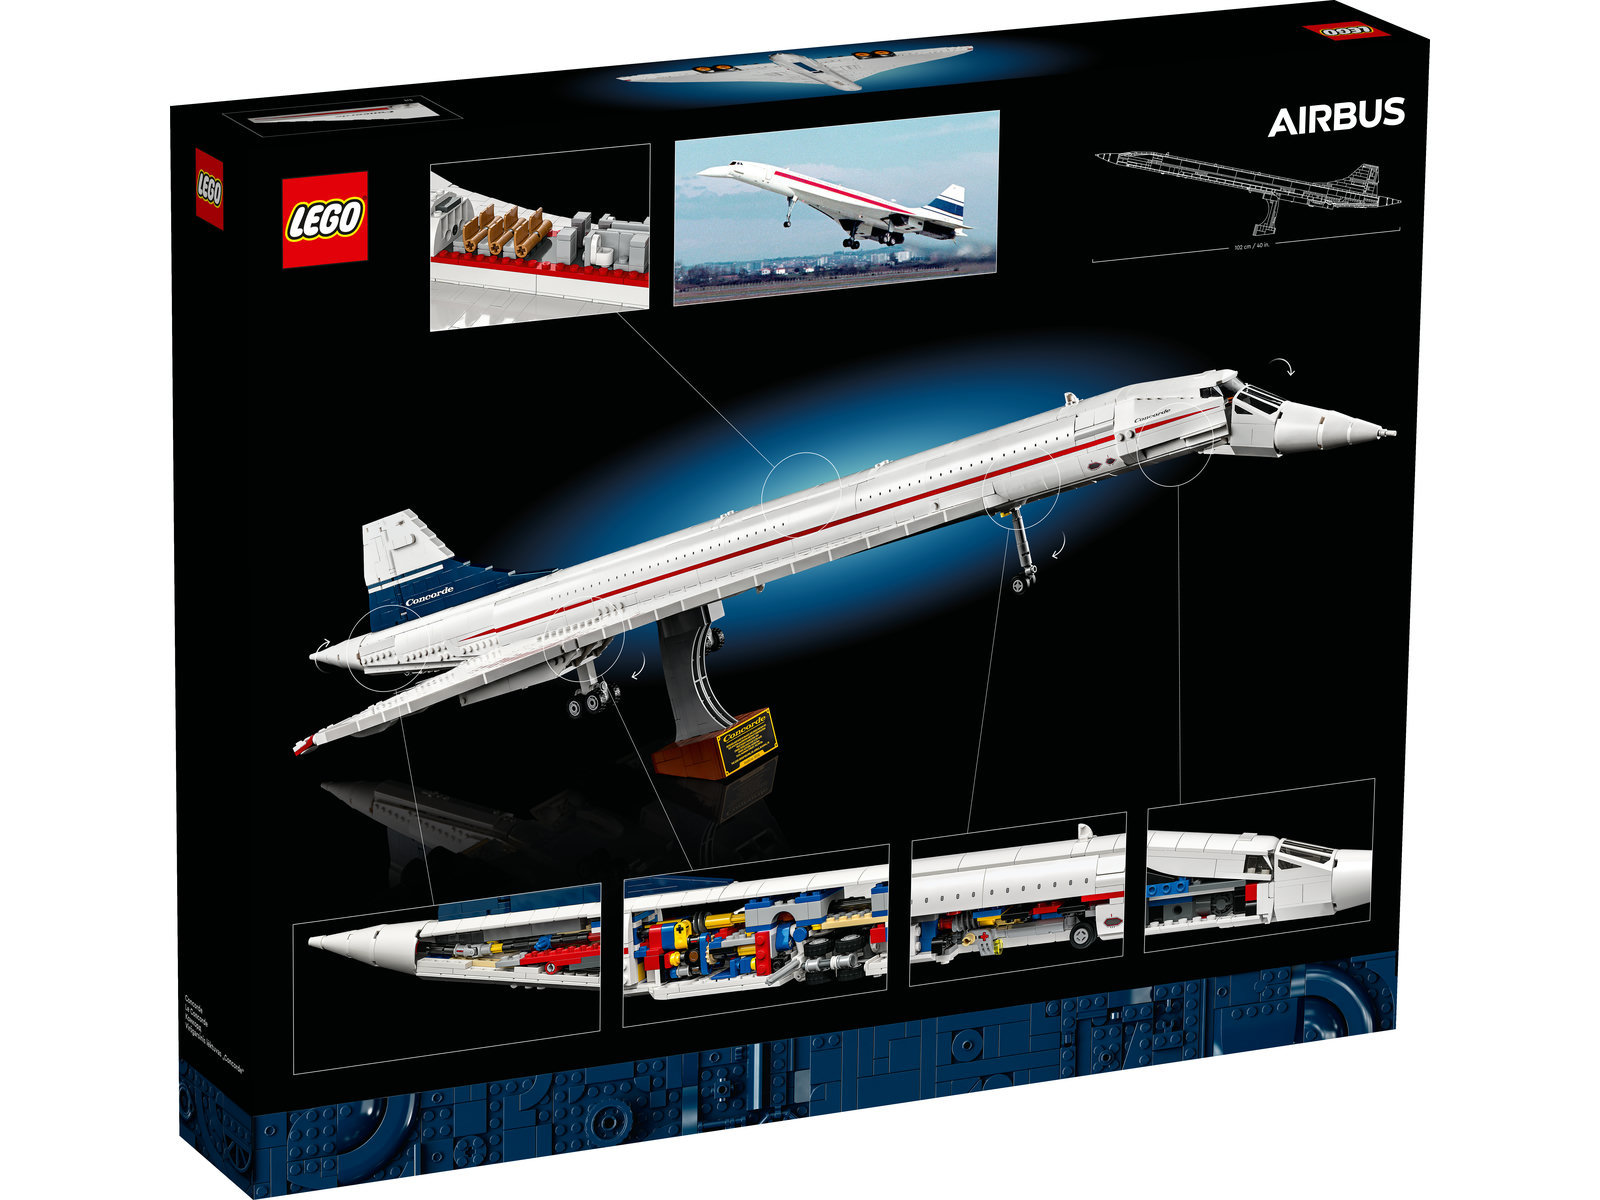 LEGO® Icons 10318 - Concorde